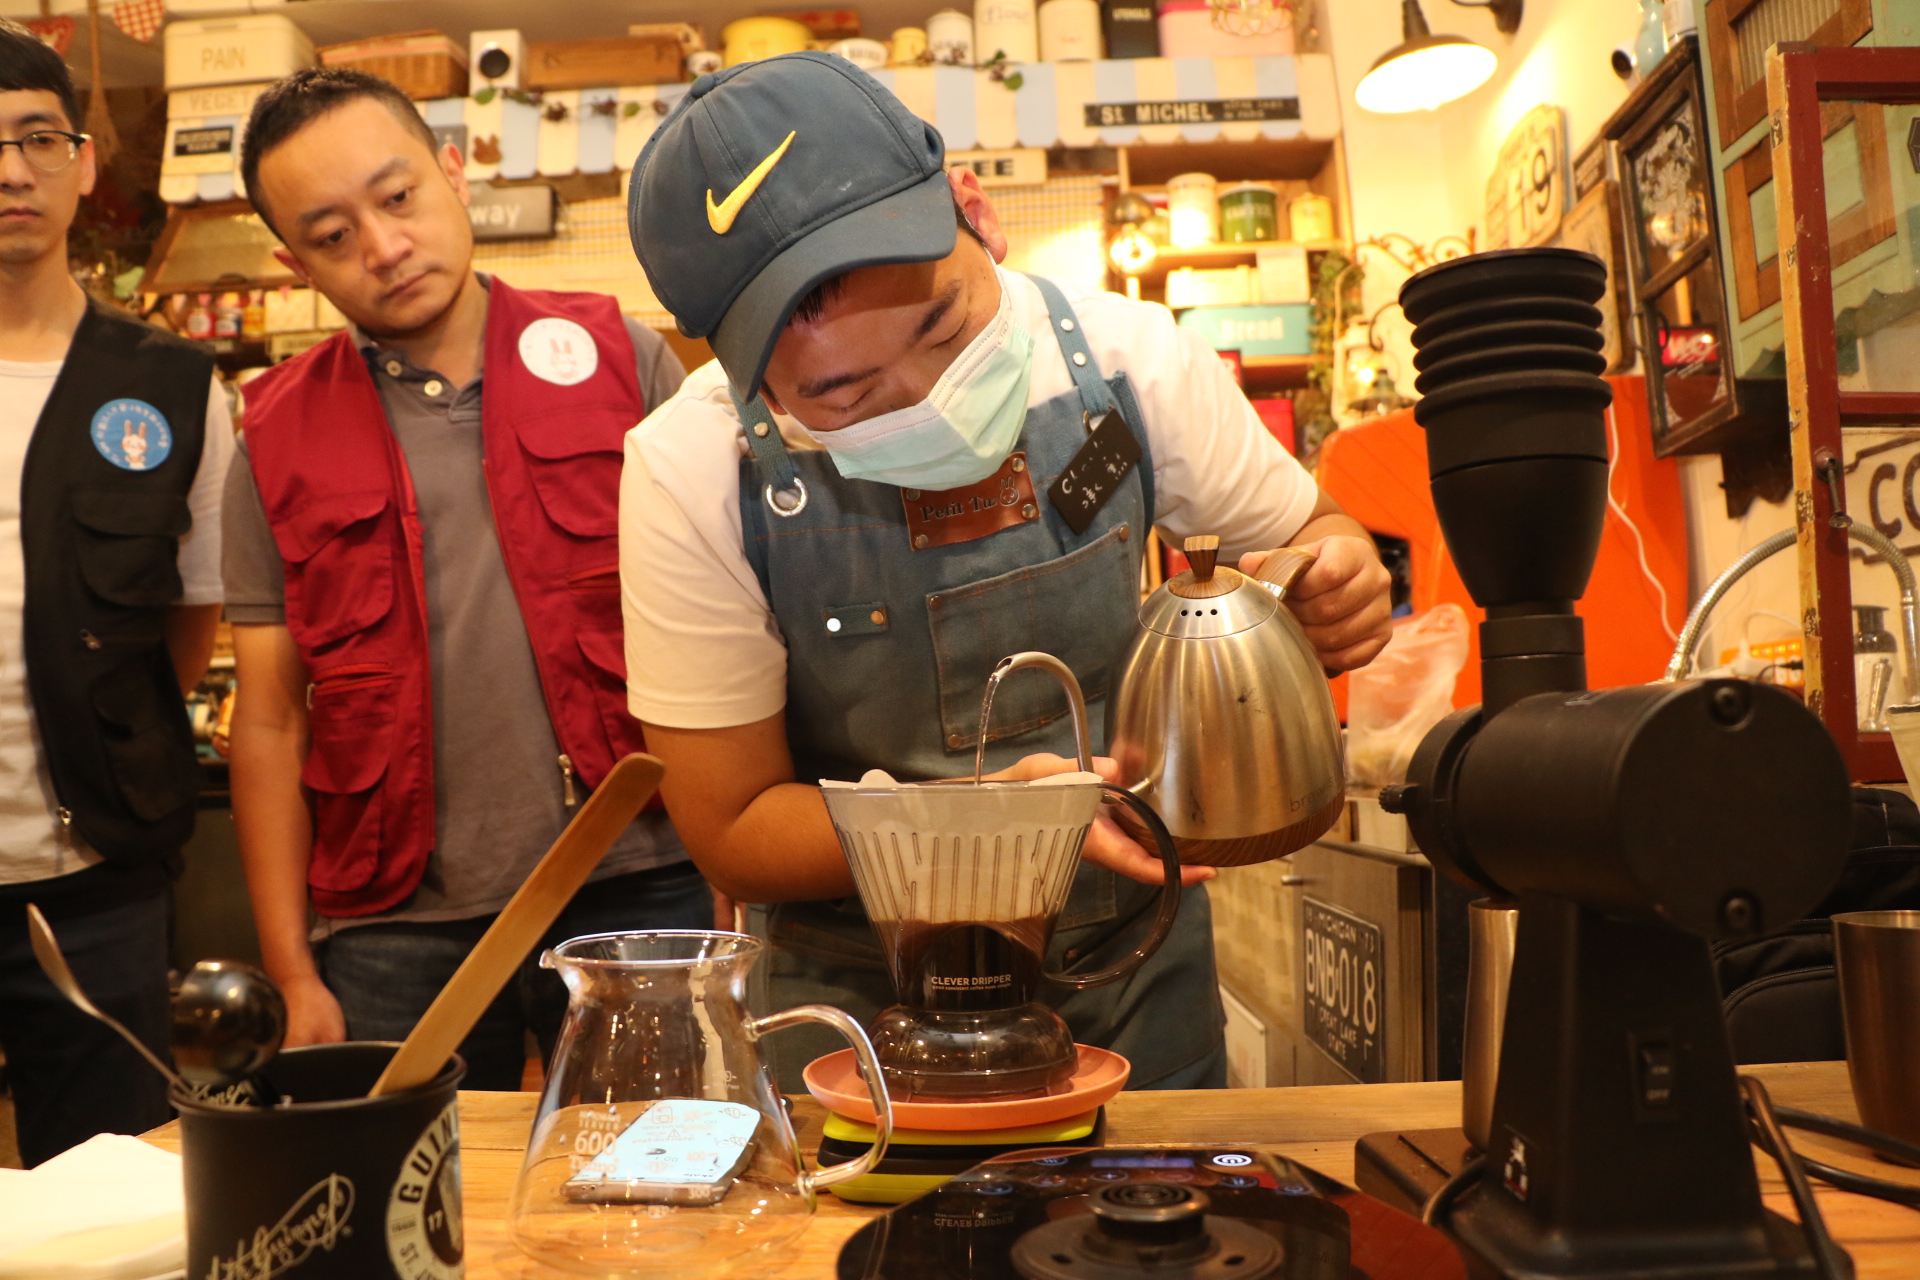 視 障 咖 啡 師 展 現 沖 泡 專 業 。 